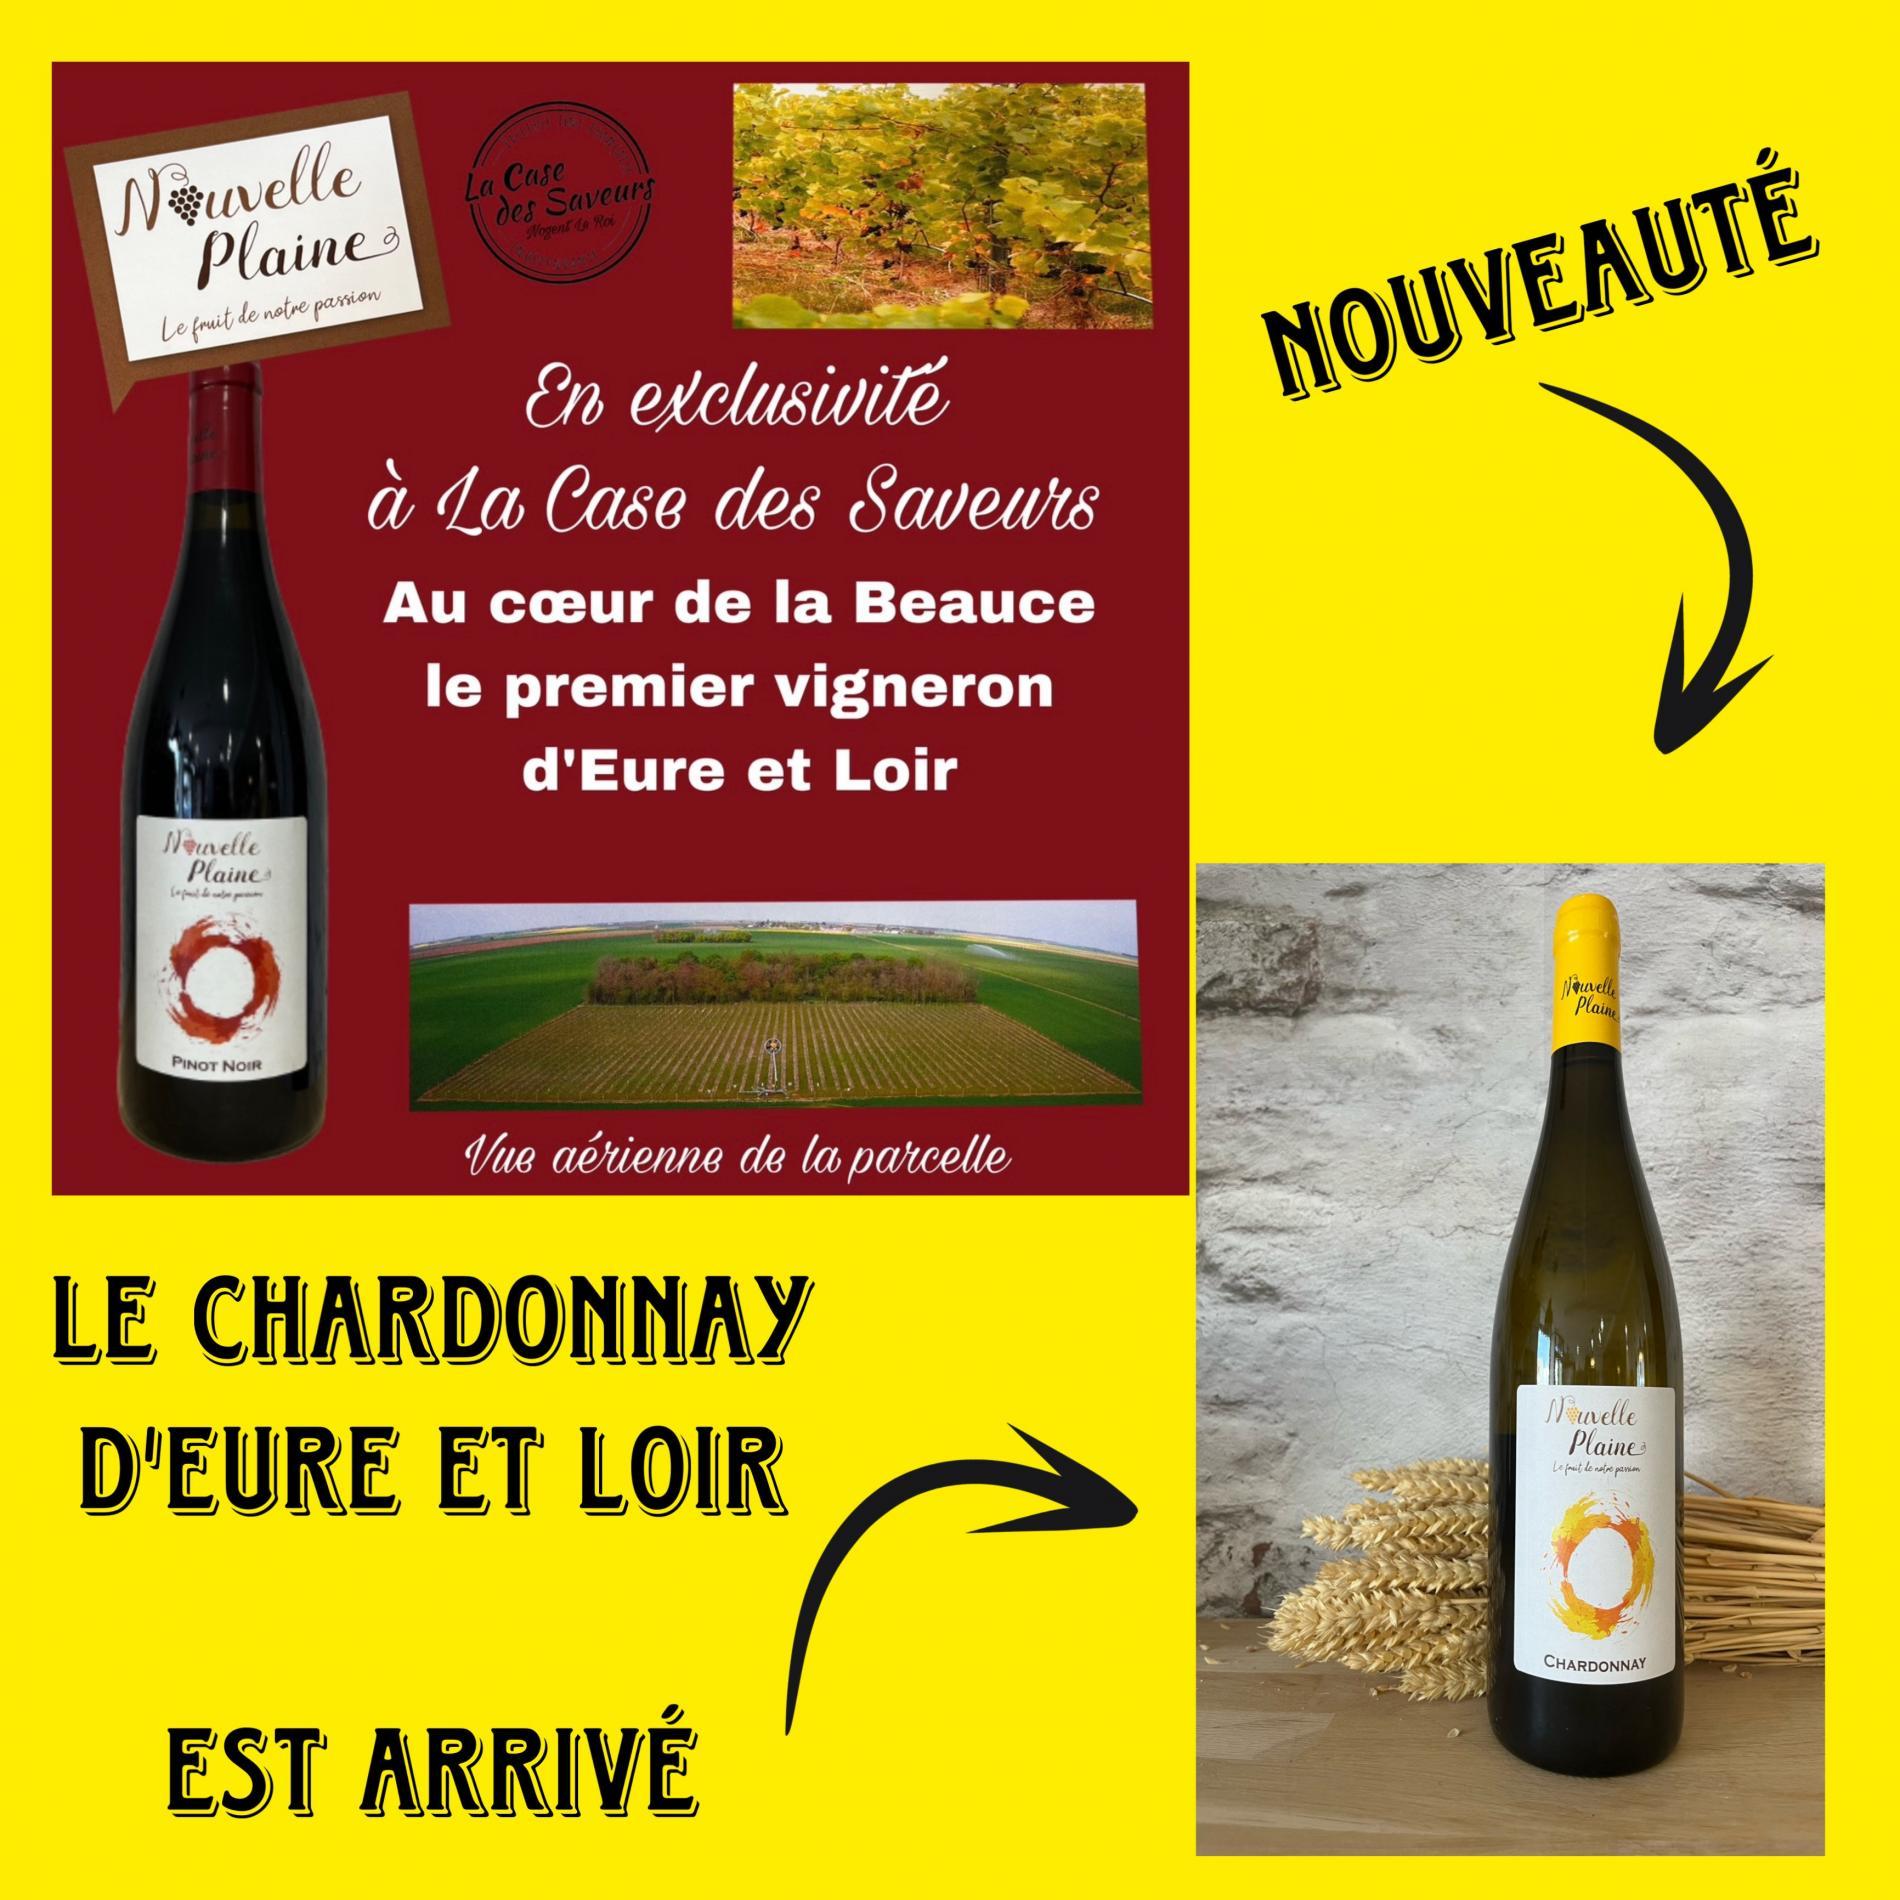 Le Chardonnay d'Eure et Loir